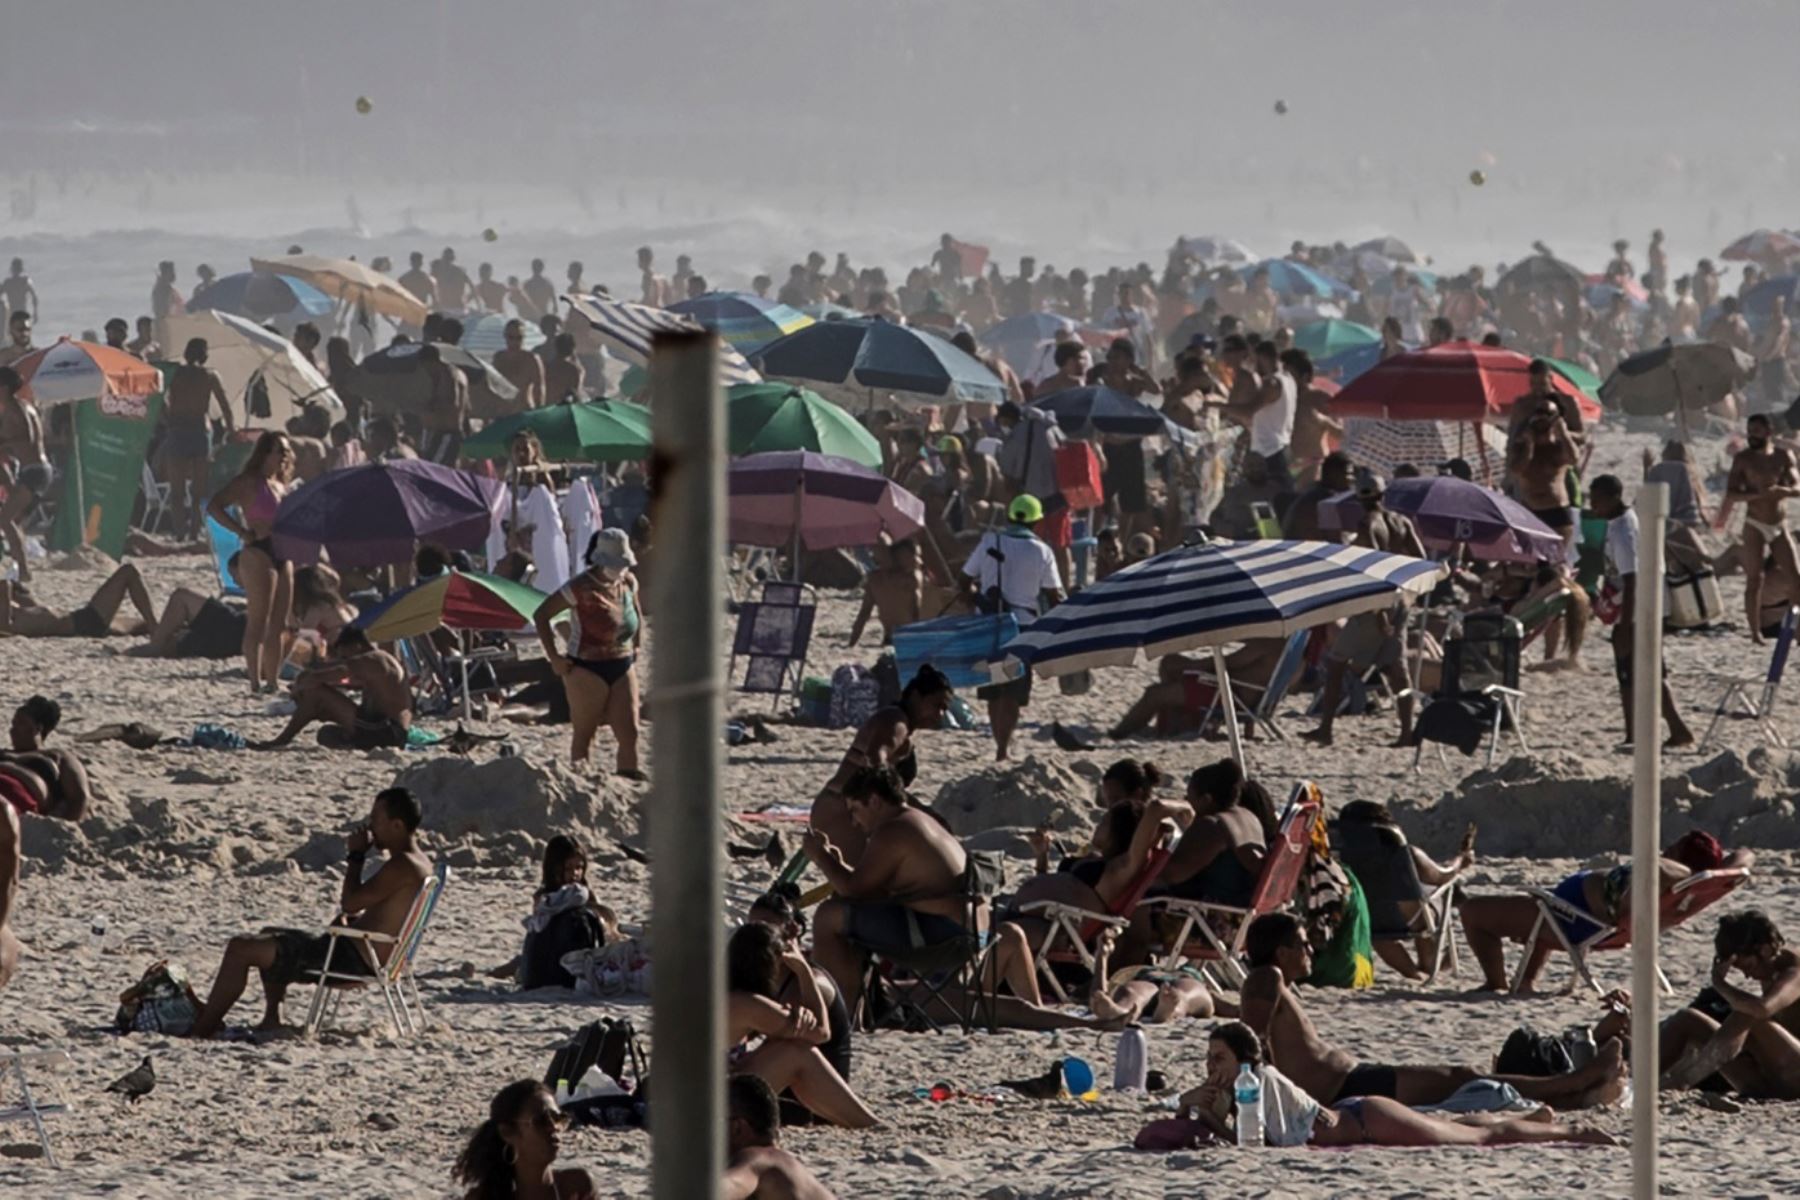 Bañistas toman el sol sin mantener distancia social para evitar la propagación del coronavirus  en la playa de Leme en Río de Janeiro.
Foto: EFE